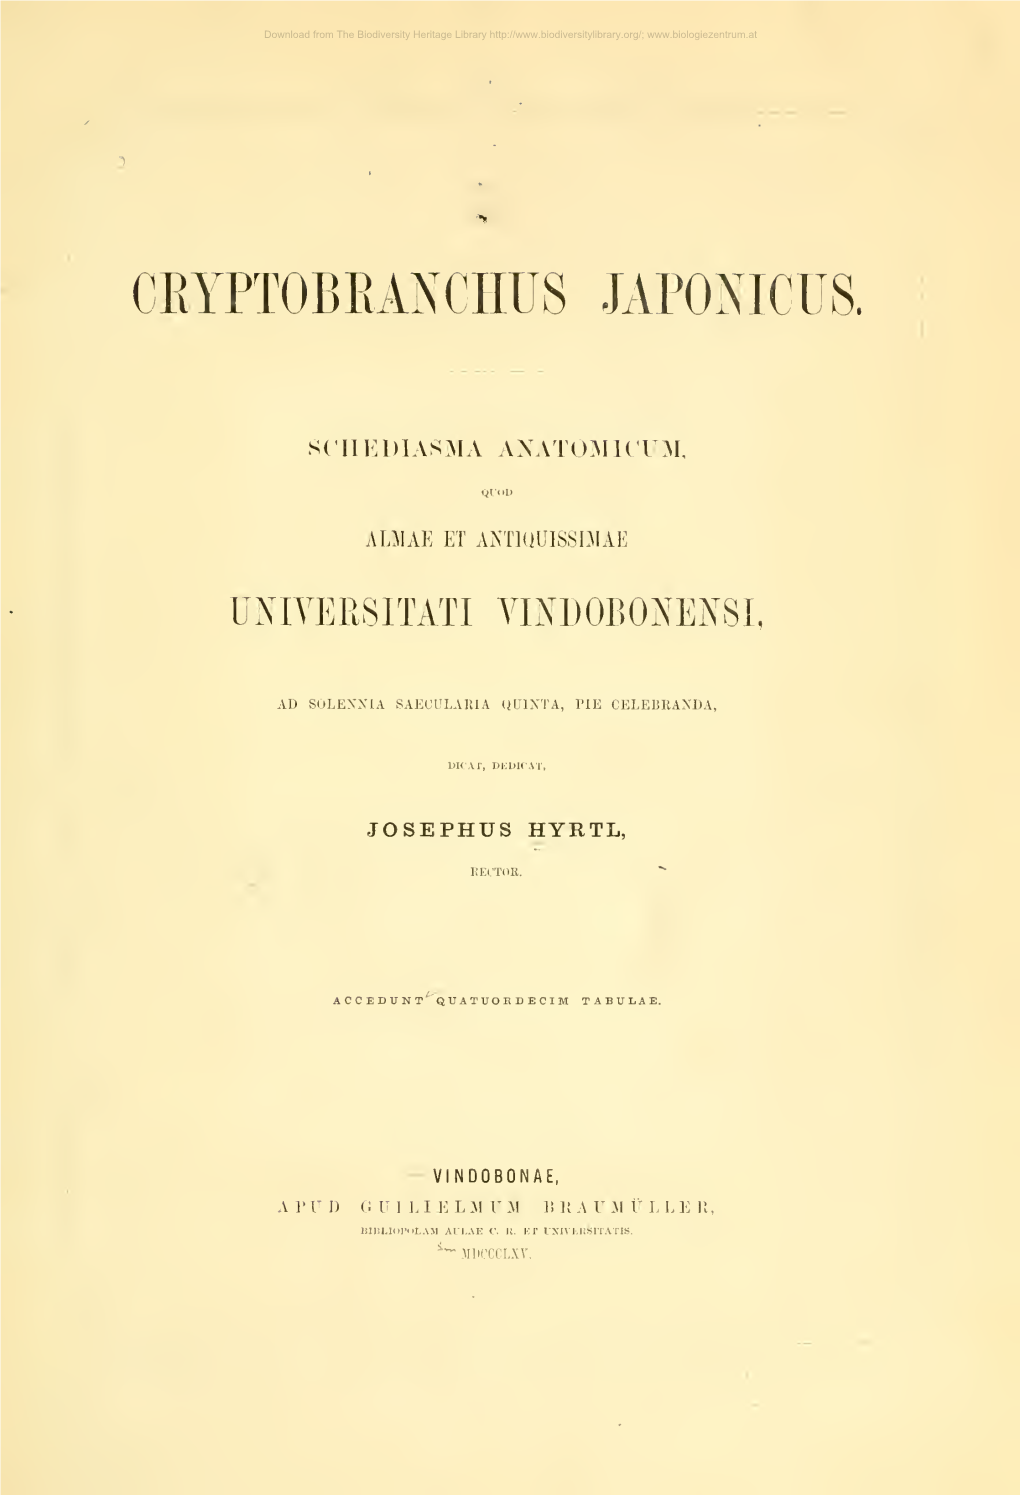 Cryptobranchaus Japonicus; Schediasma Anatomicum